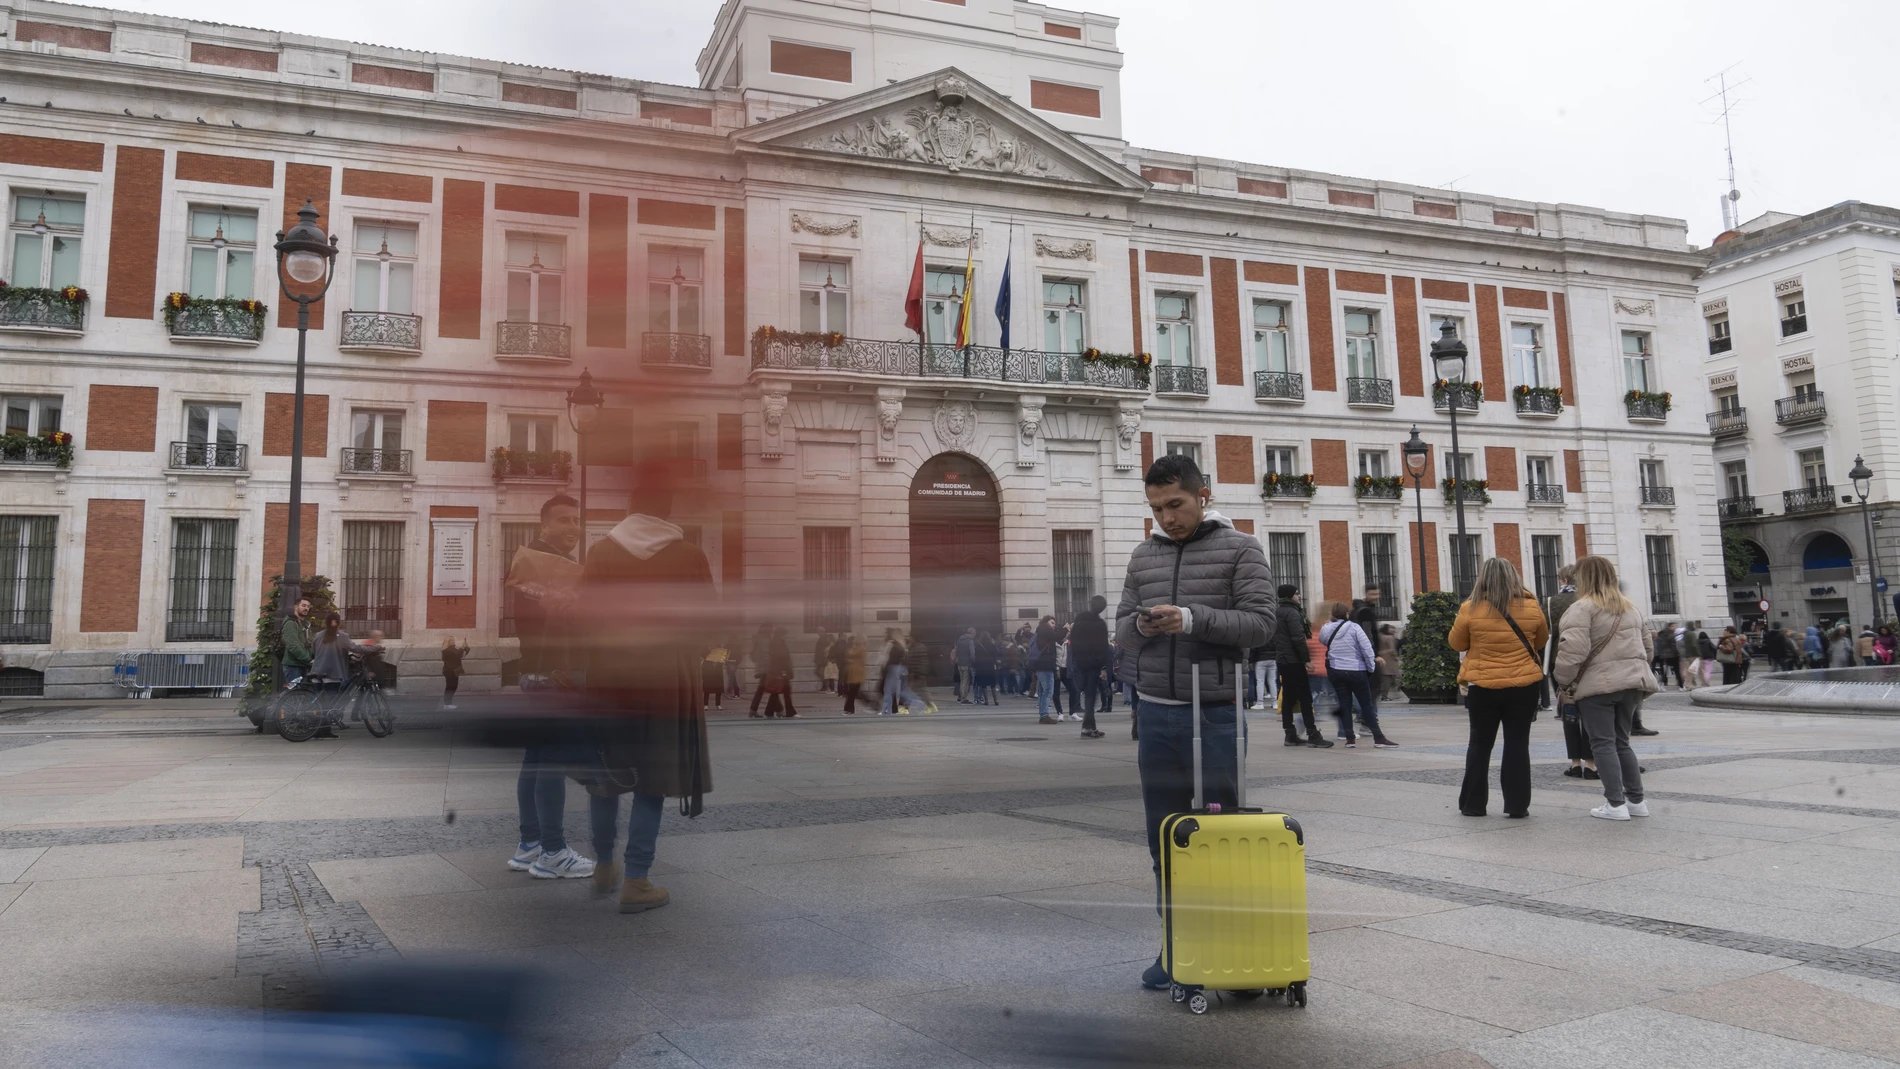 Turistas en el centro de Madrid.